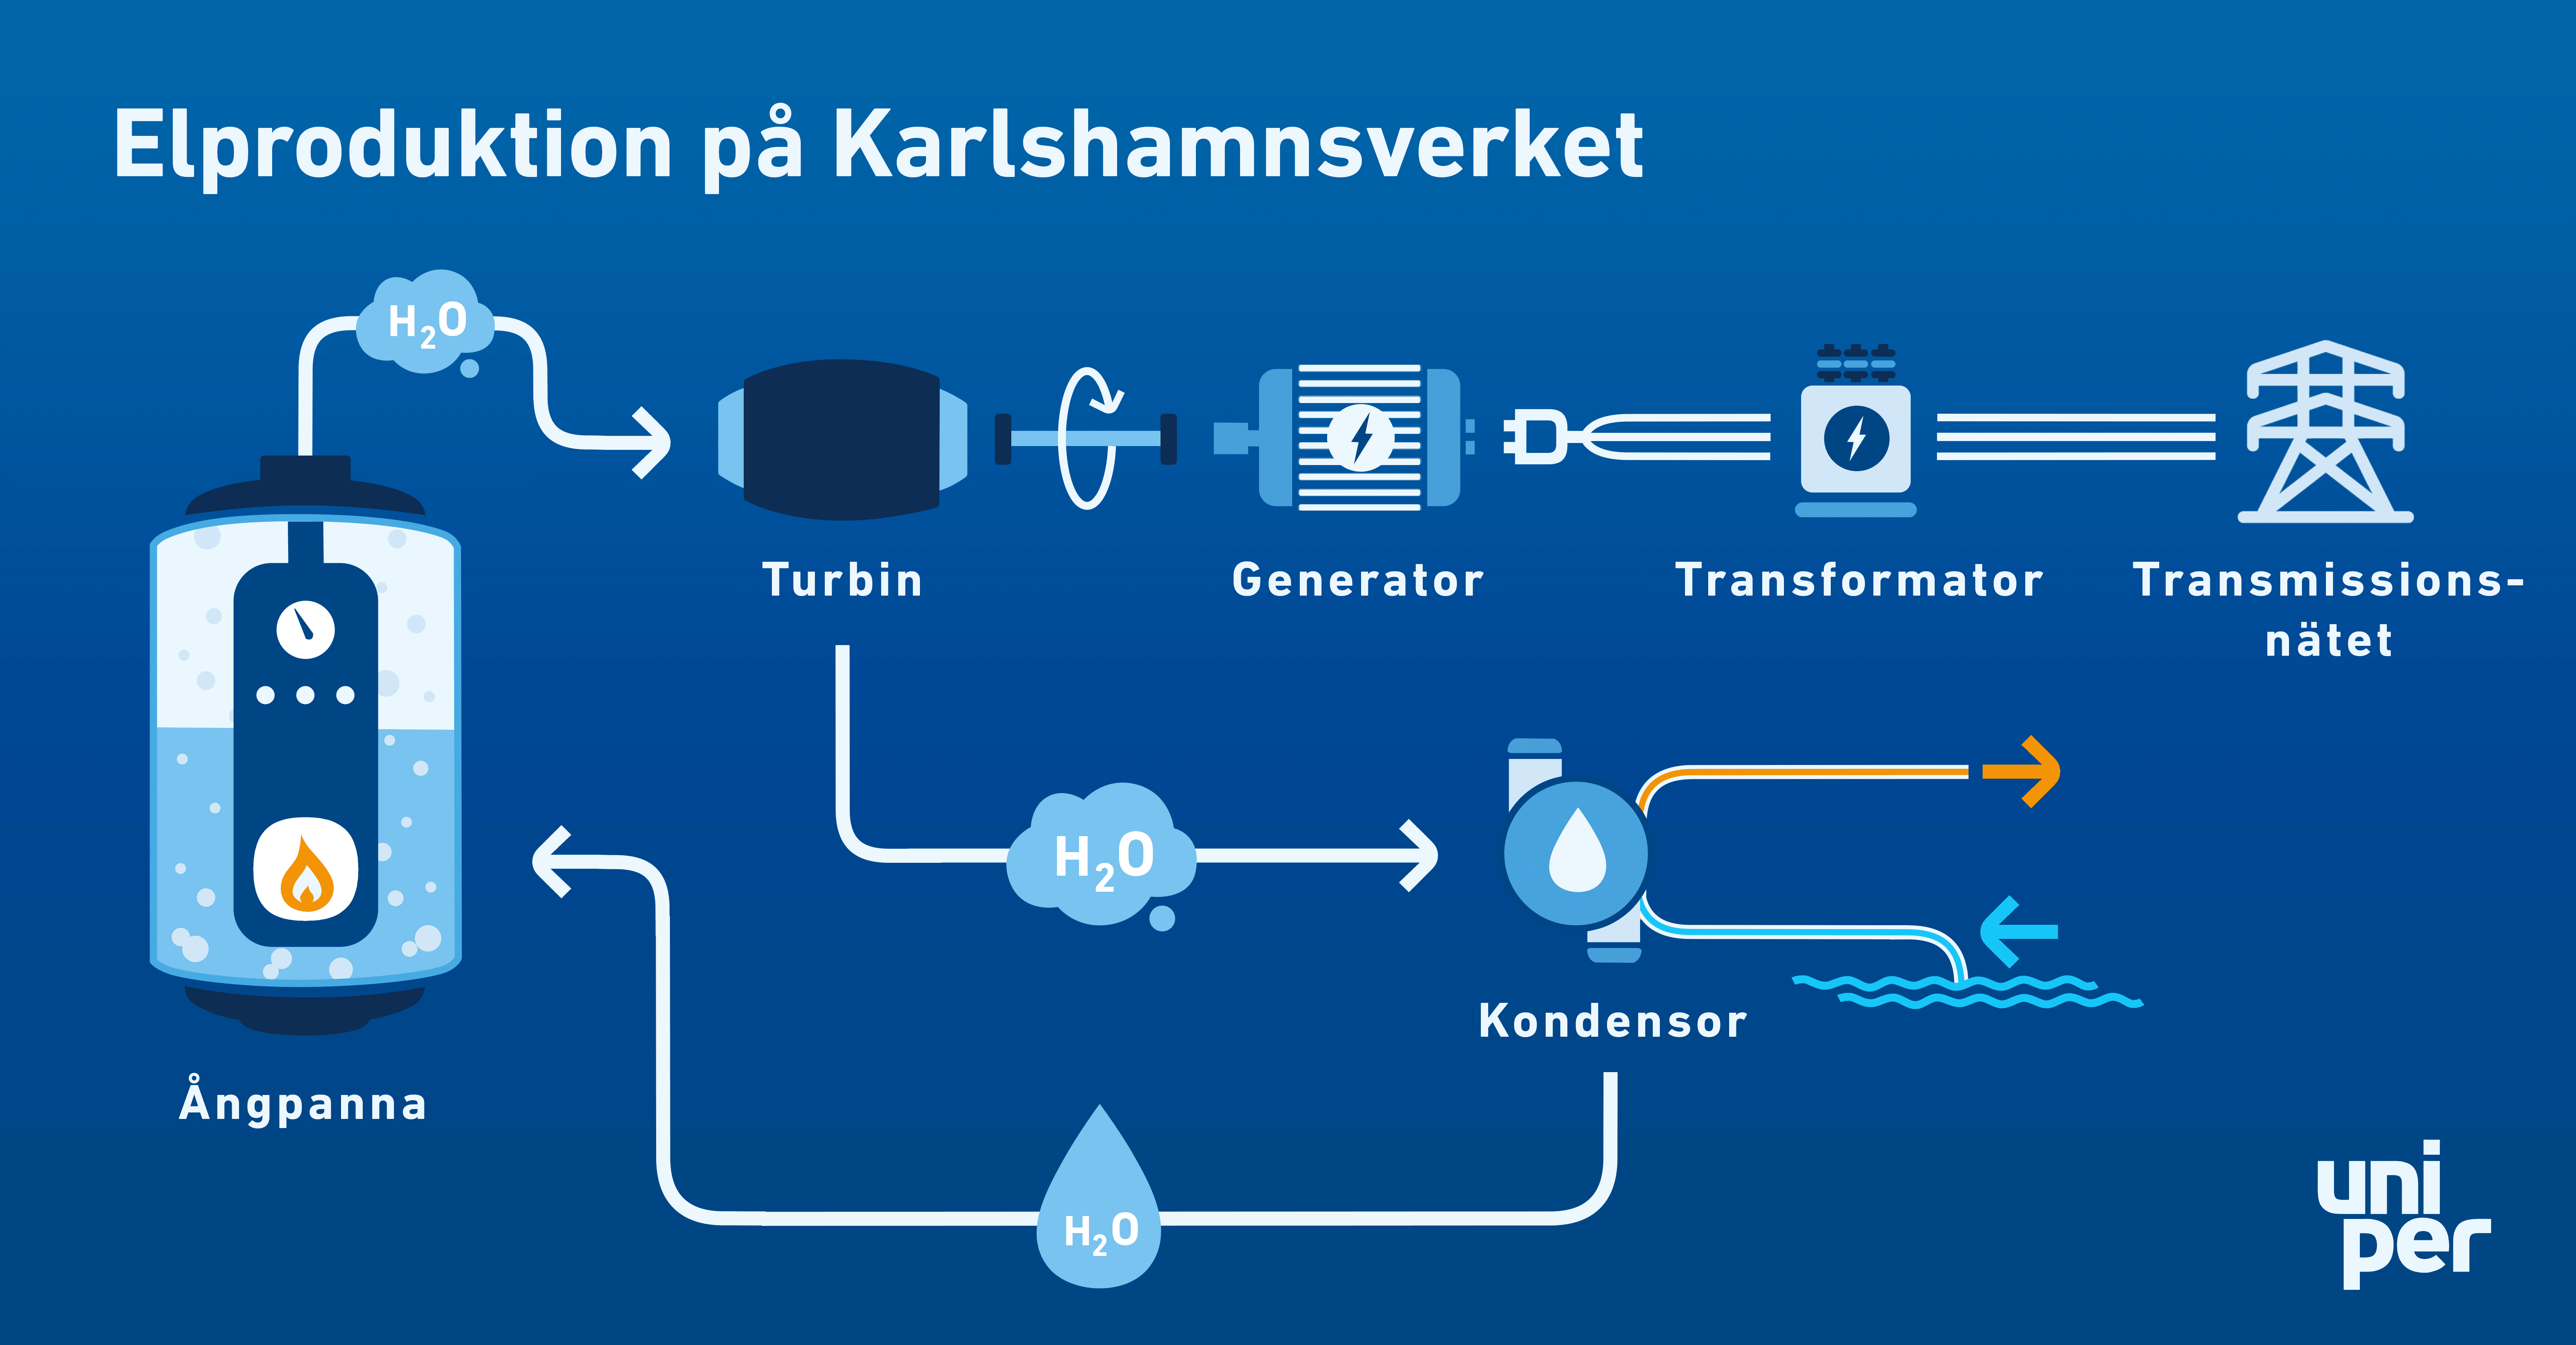 Elproduktion på Karlshamnsverket